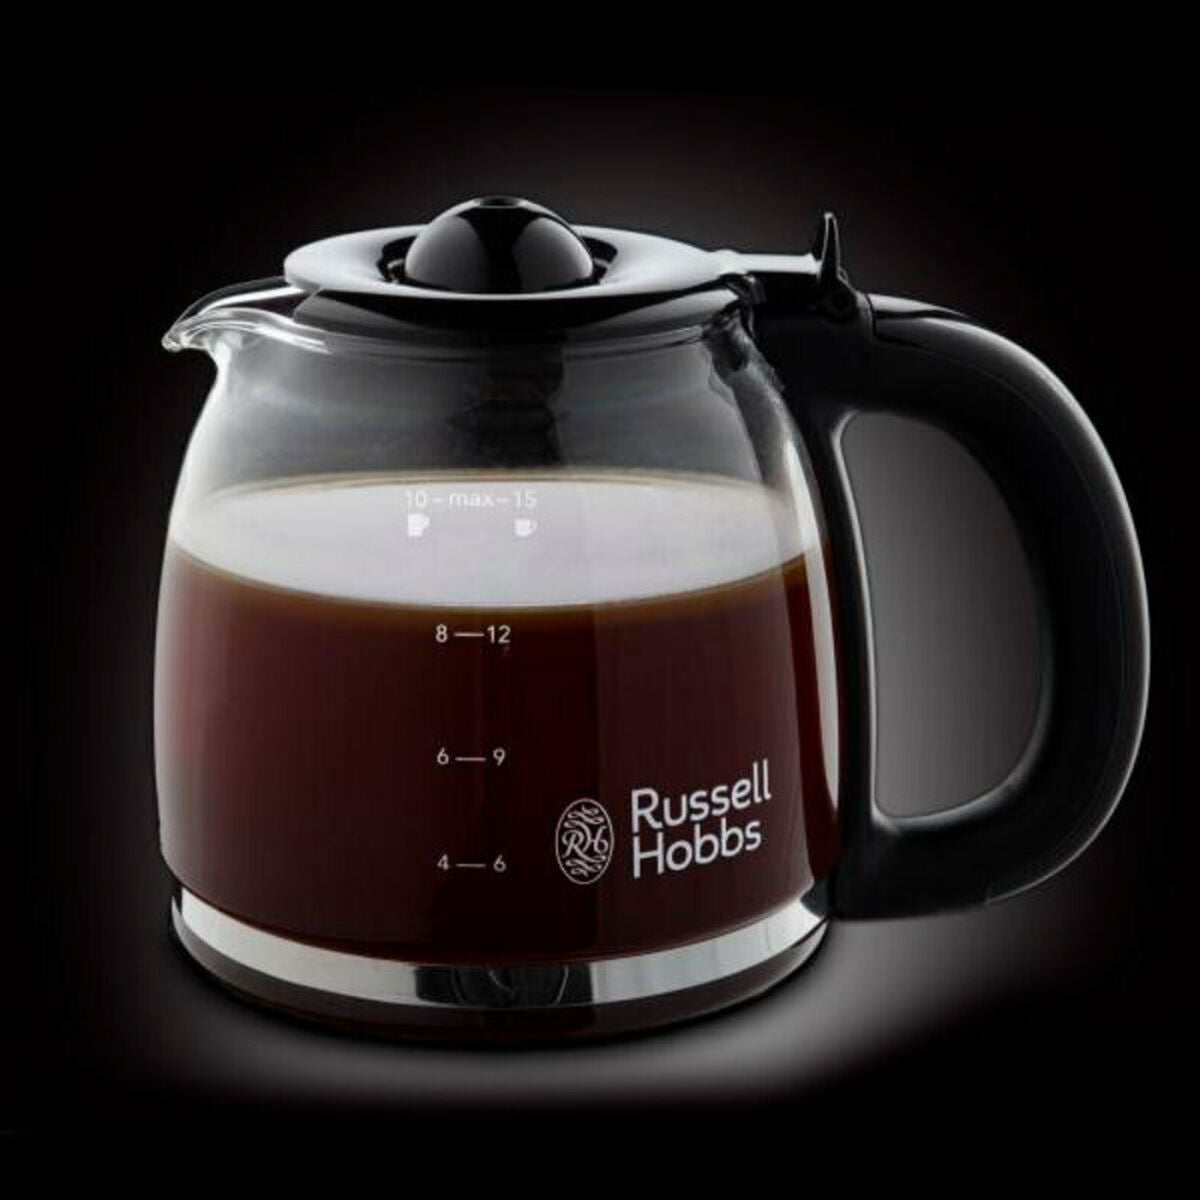 Drip Coffee Machine Russell Hobbs (15 tasses) 1100W